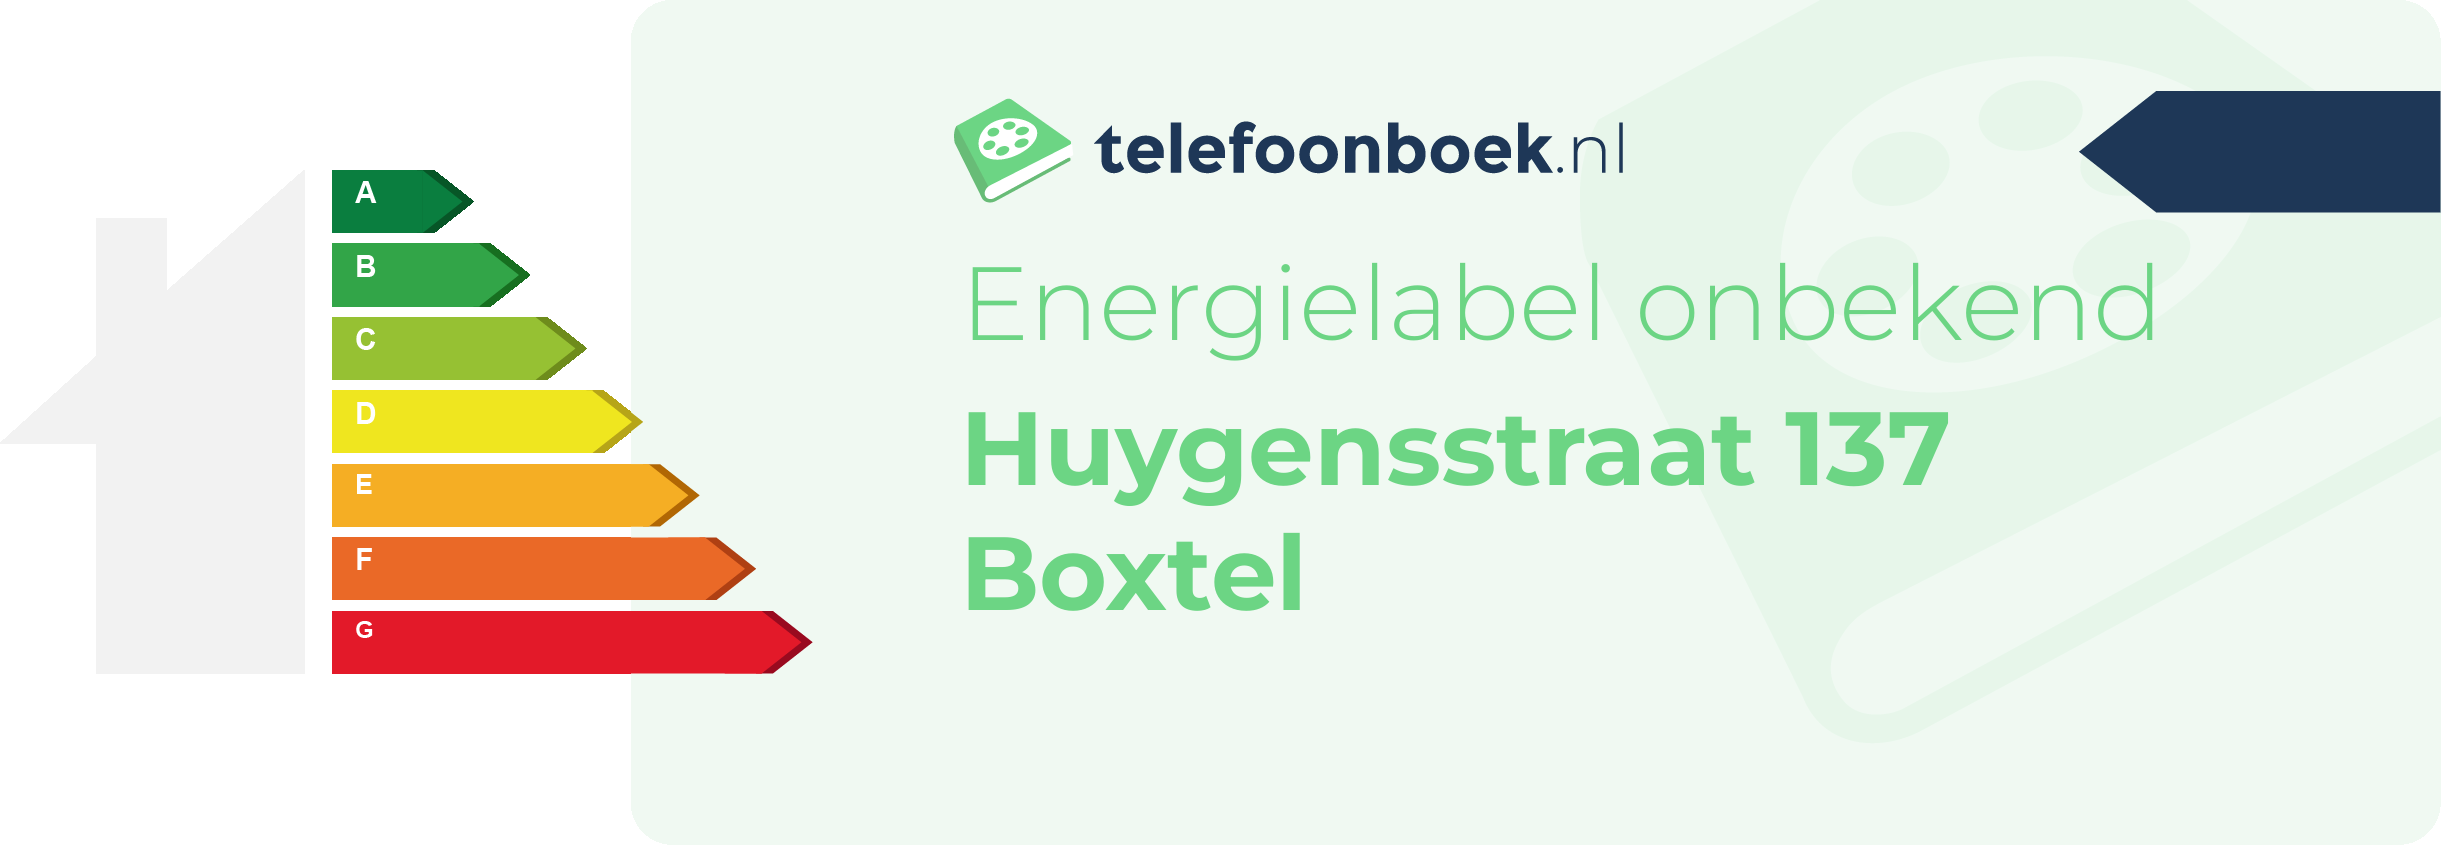 Energielabel Huygensstraat 137 Boxtel